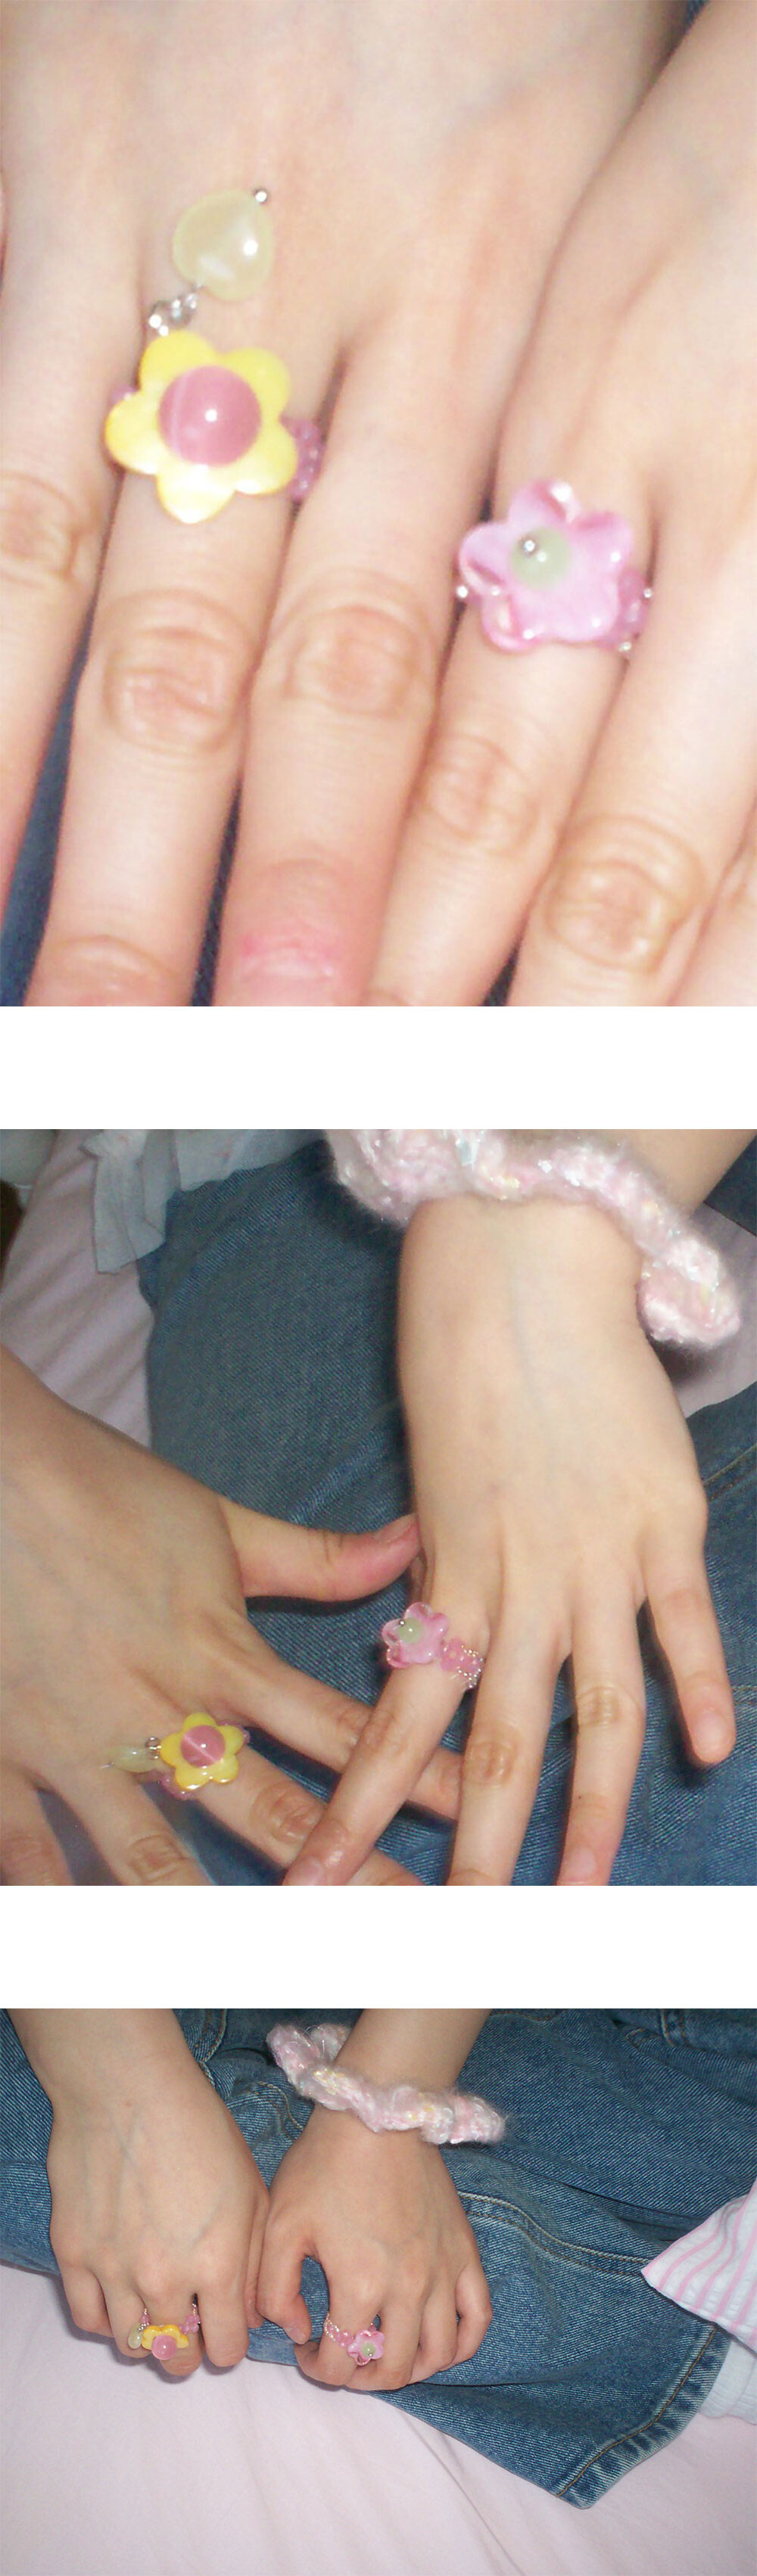 Jubiler Beads Ring (Pink)